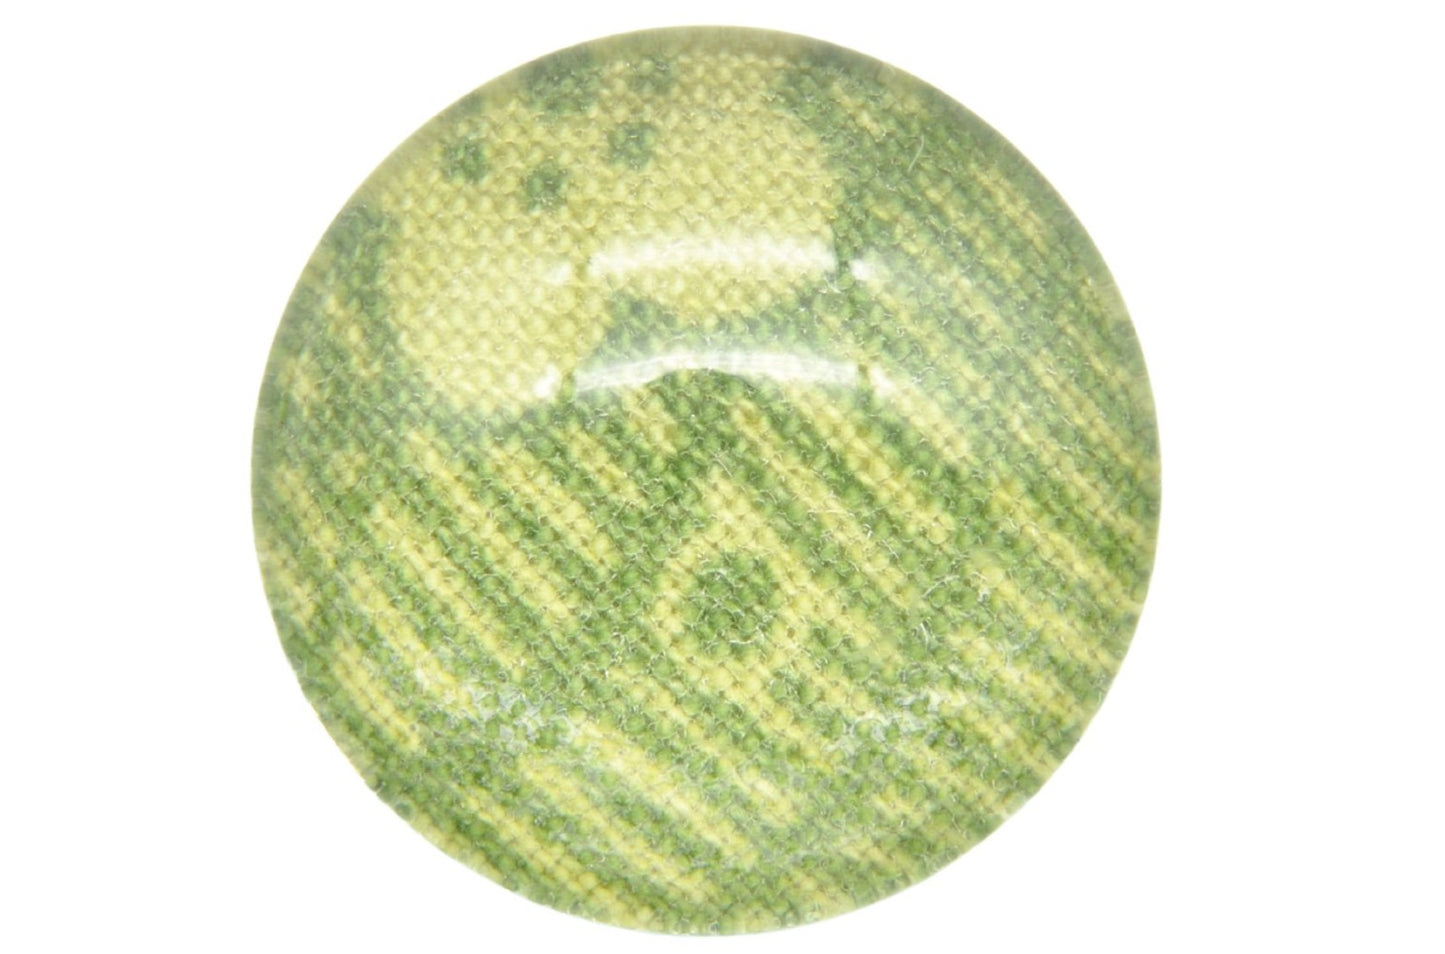 Midori Field Lapel Pins